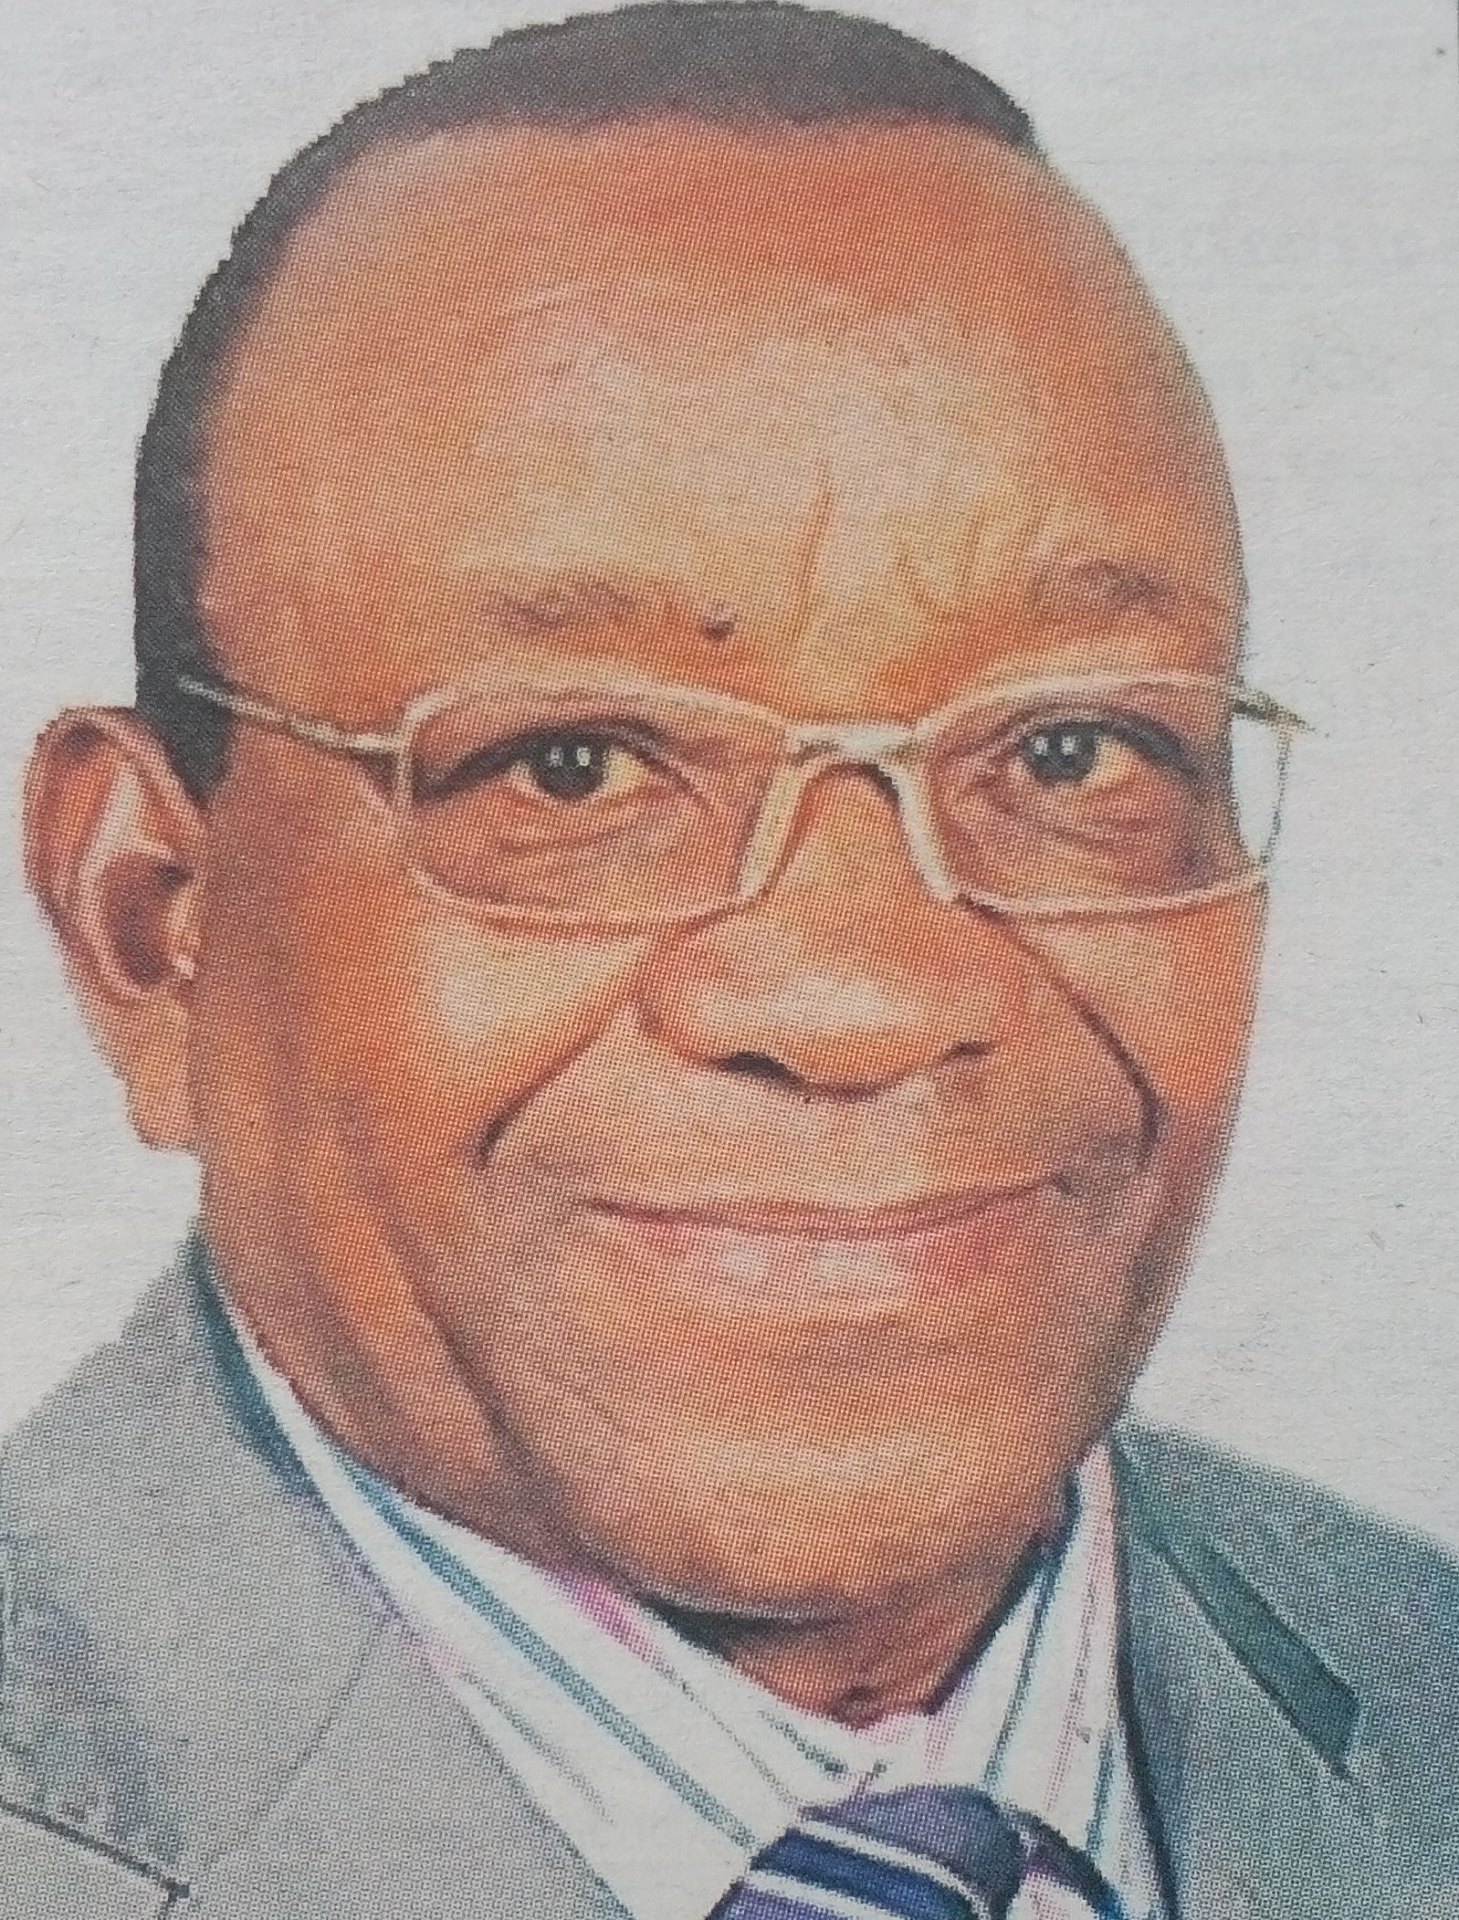 Obituary Image of Eliphelet Njeru M’thambu